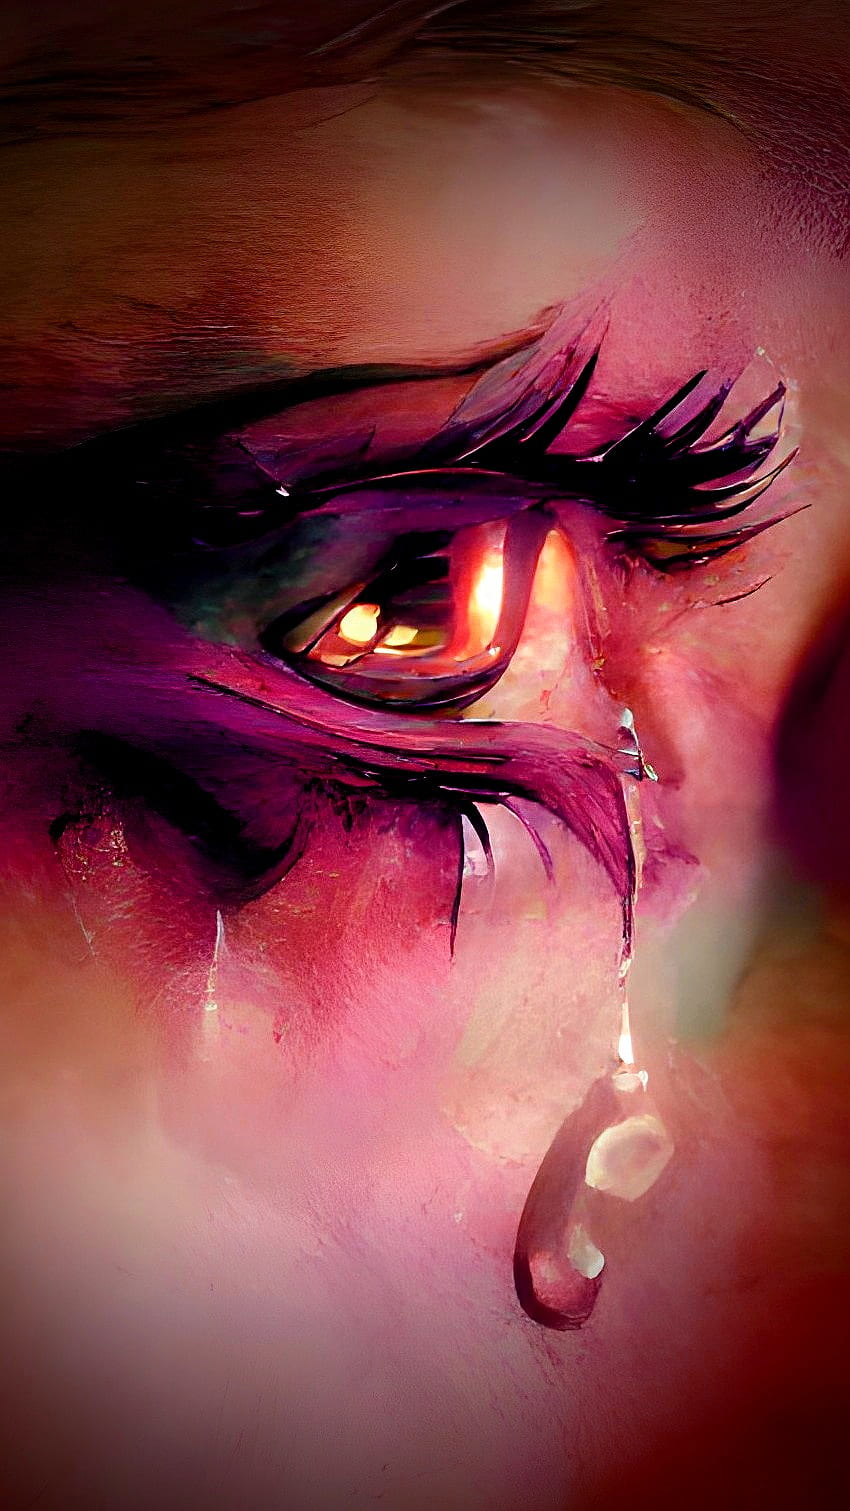 Teardrop, eye, art, PoeticDreamz, emotion, tears, tear, crying ...